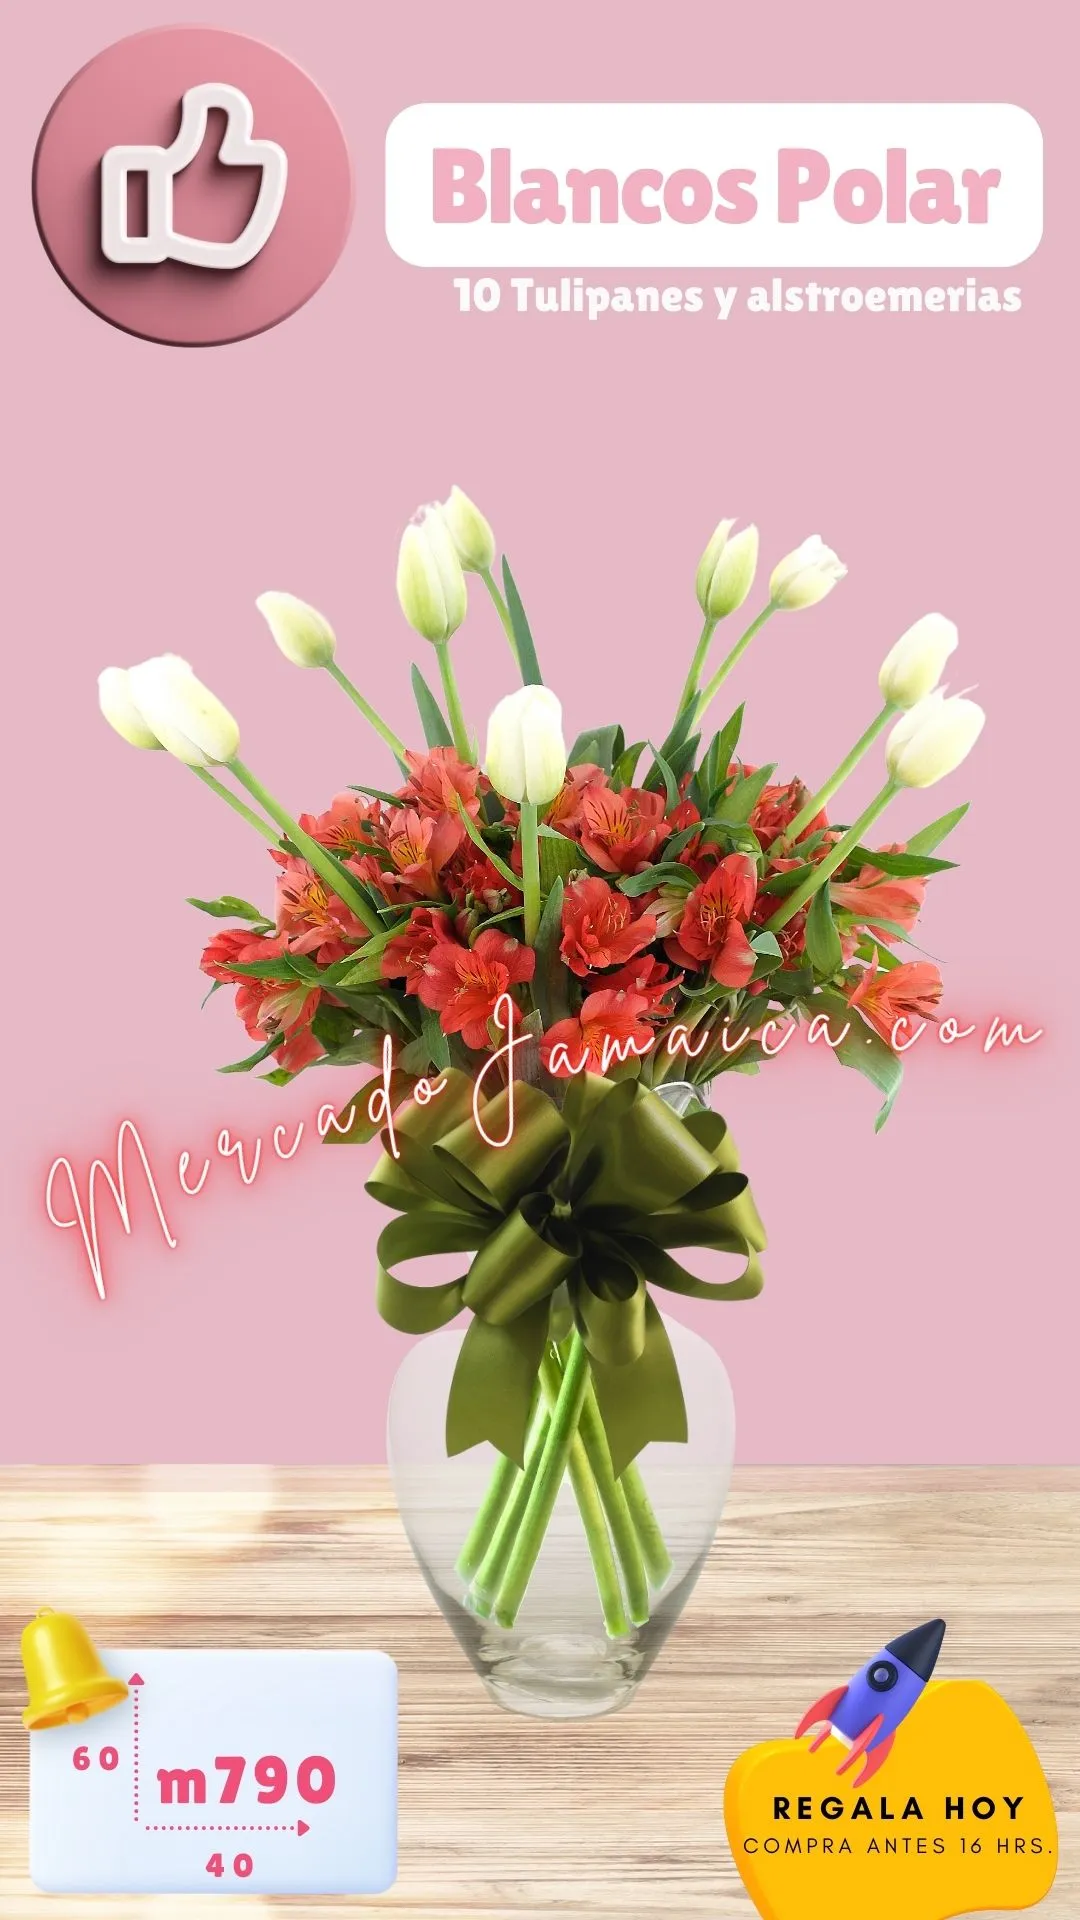 Arreglos florales con tulipanes blanco polar